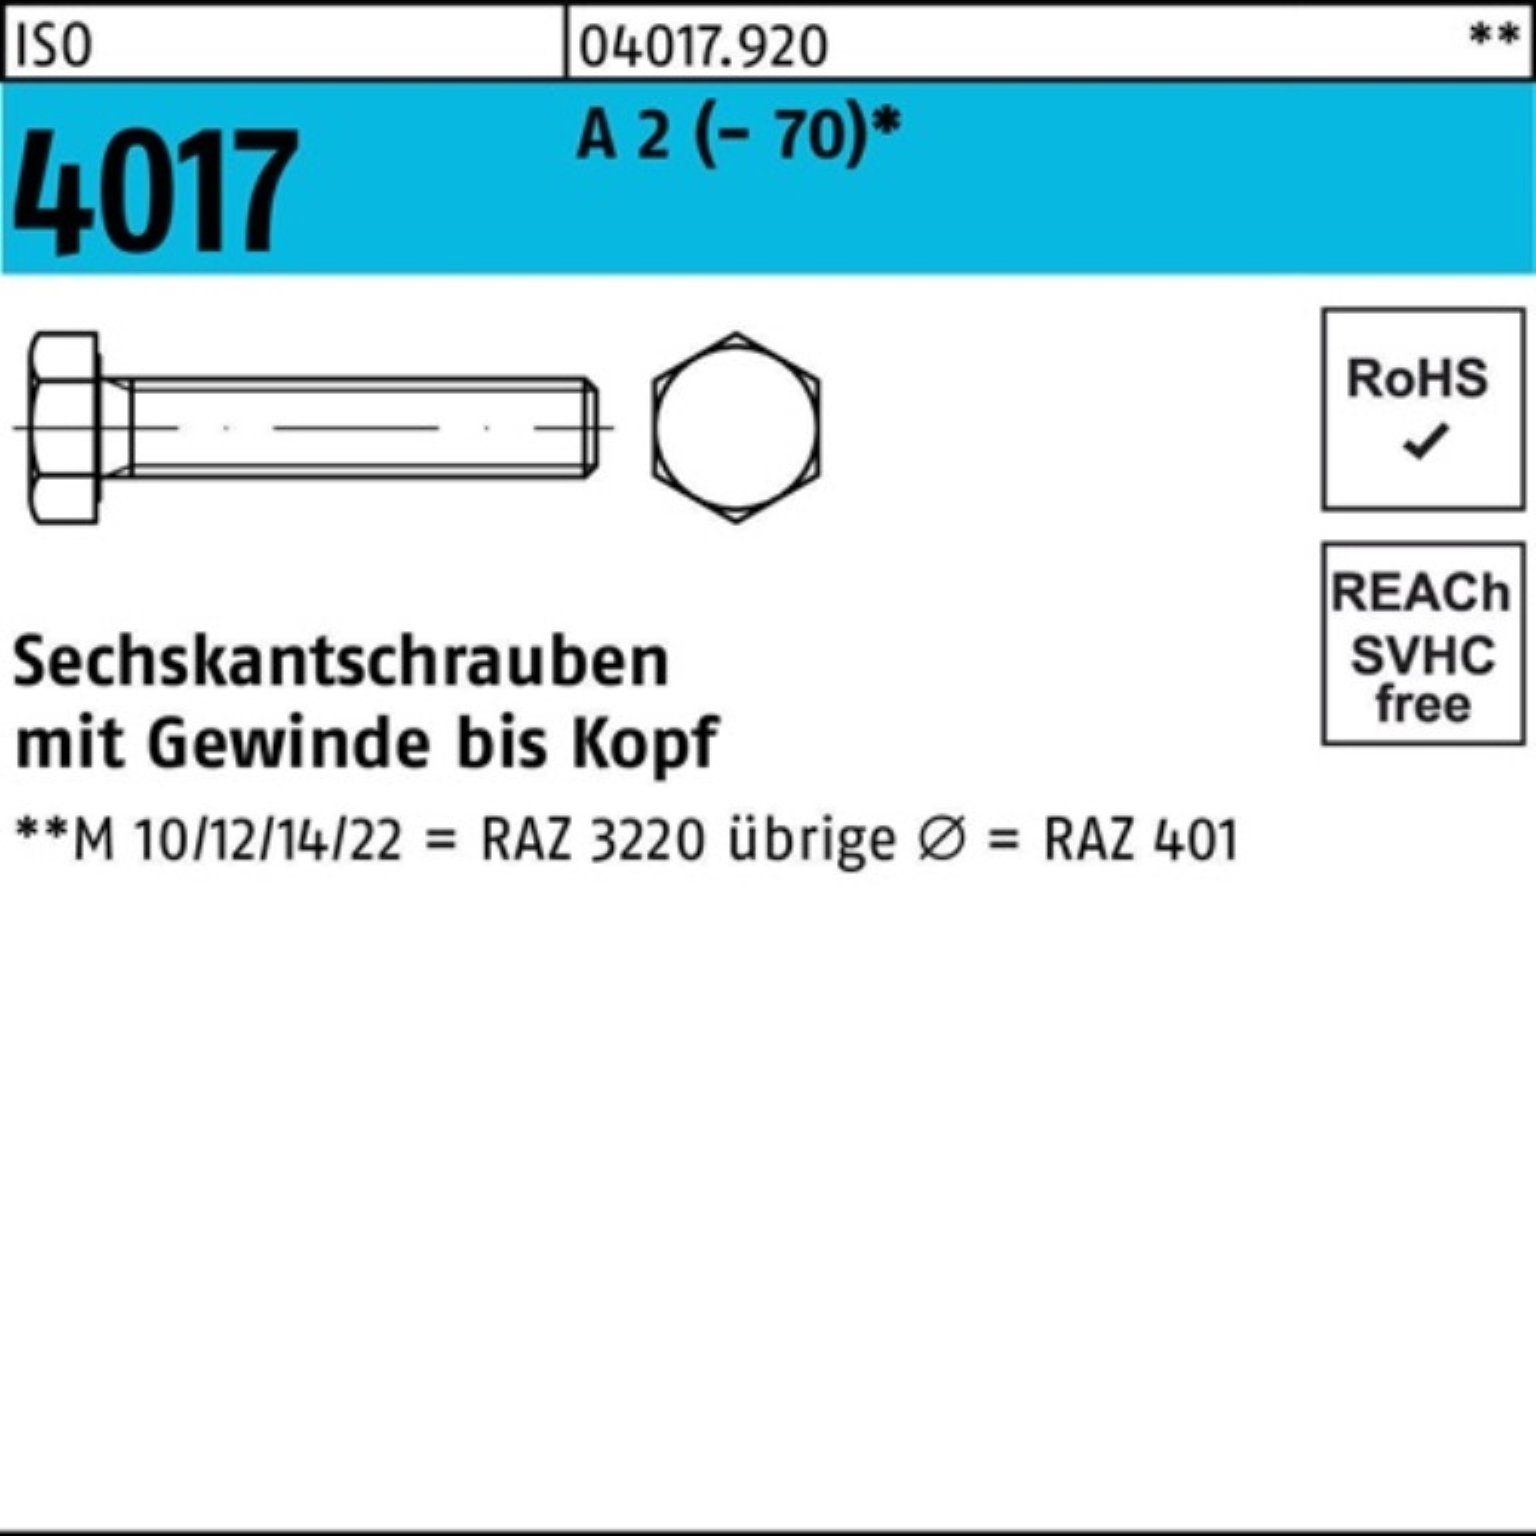 Bufab Sechskantschraube 200er Pack Sechskantschraube ISO 4017 VG M8x 12 A 2 (70) 200 Stück